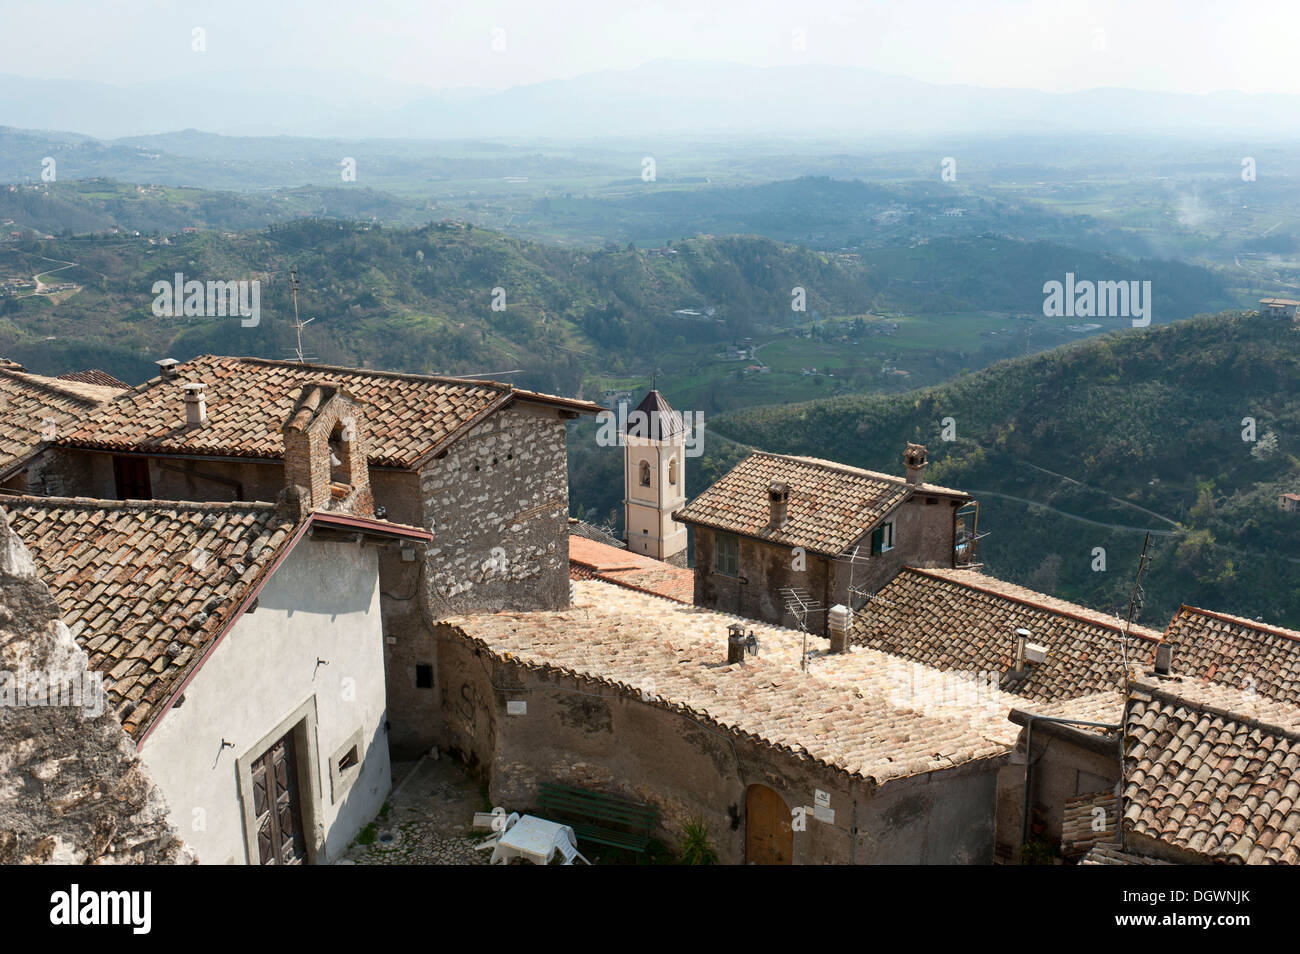 Vue sur les toits de la vieille ville de Monte Celeste sur un paysage du peintre, Olevano Romano, lazio, Italie, Europe Banque D'Images